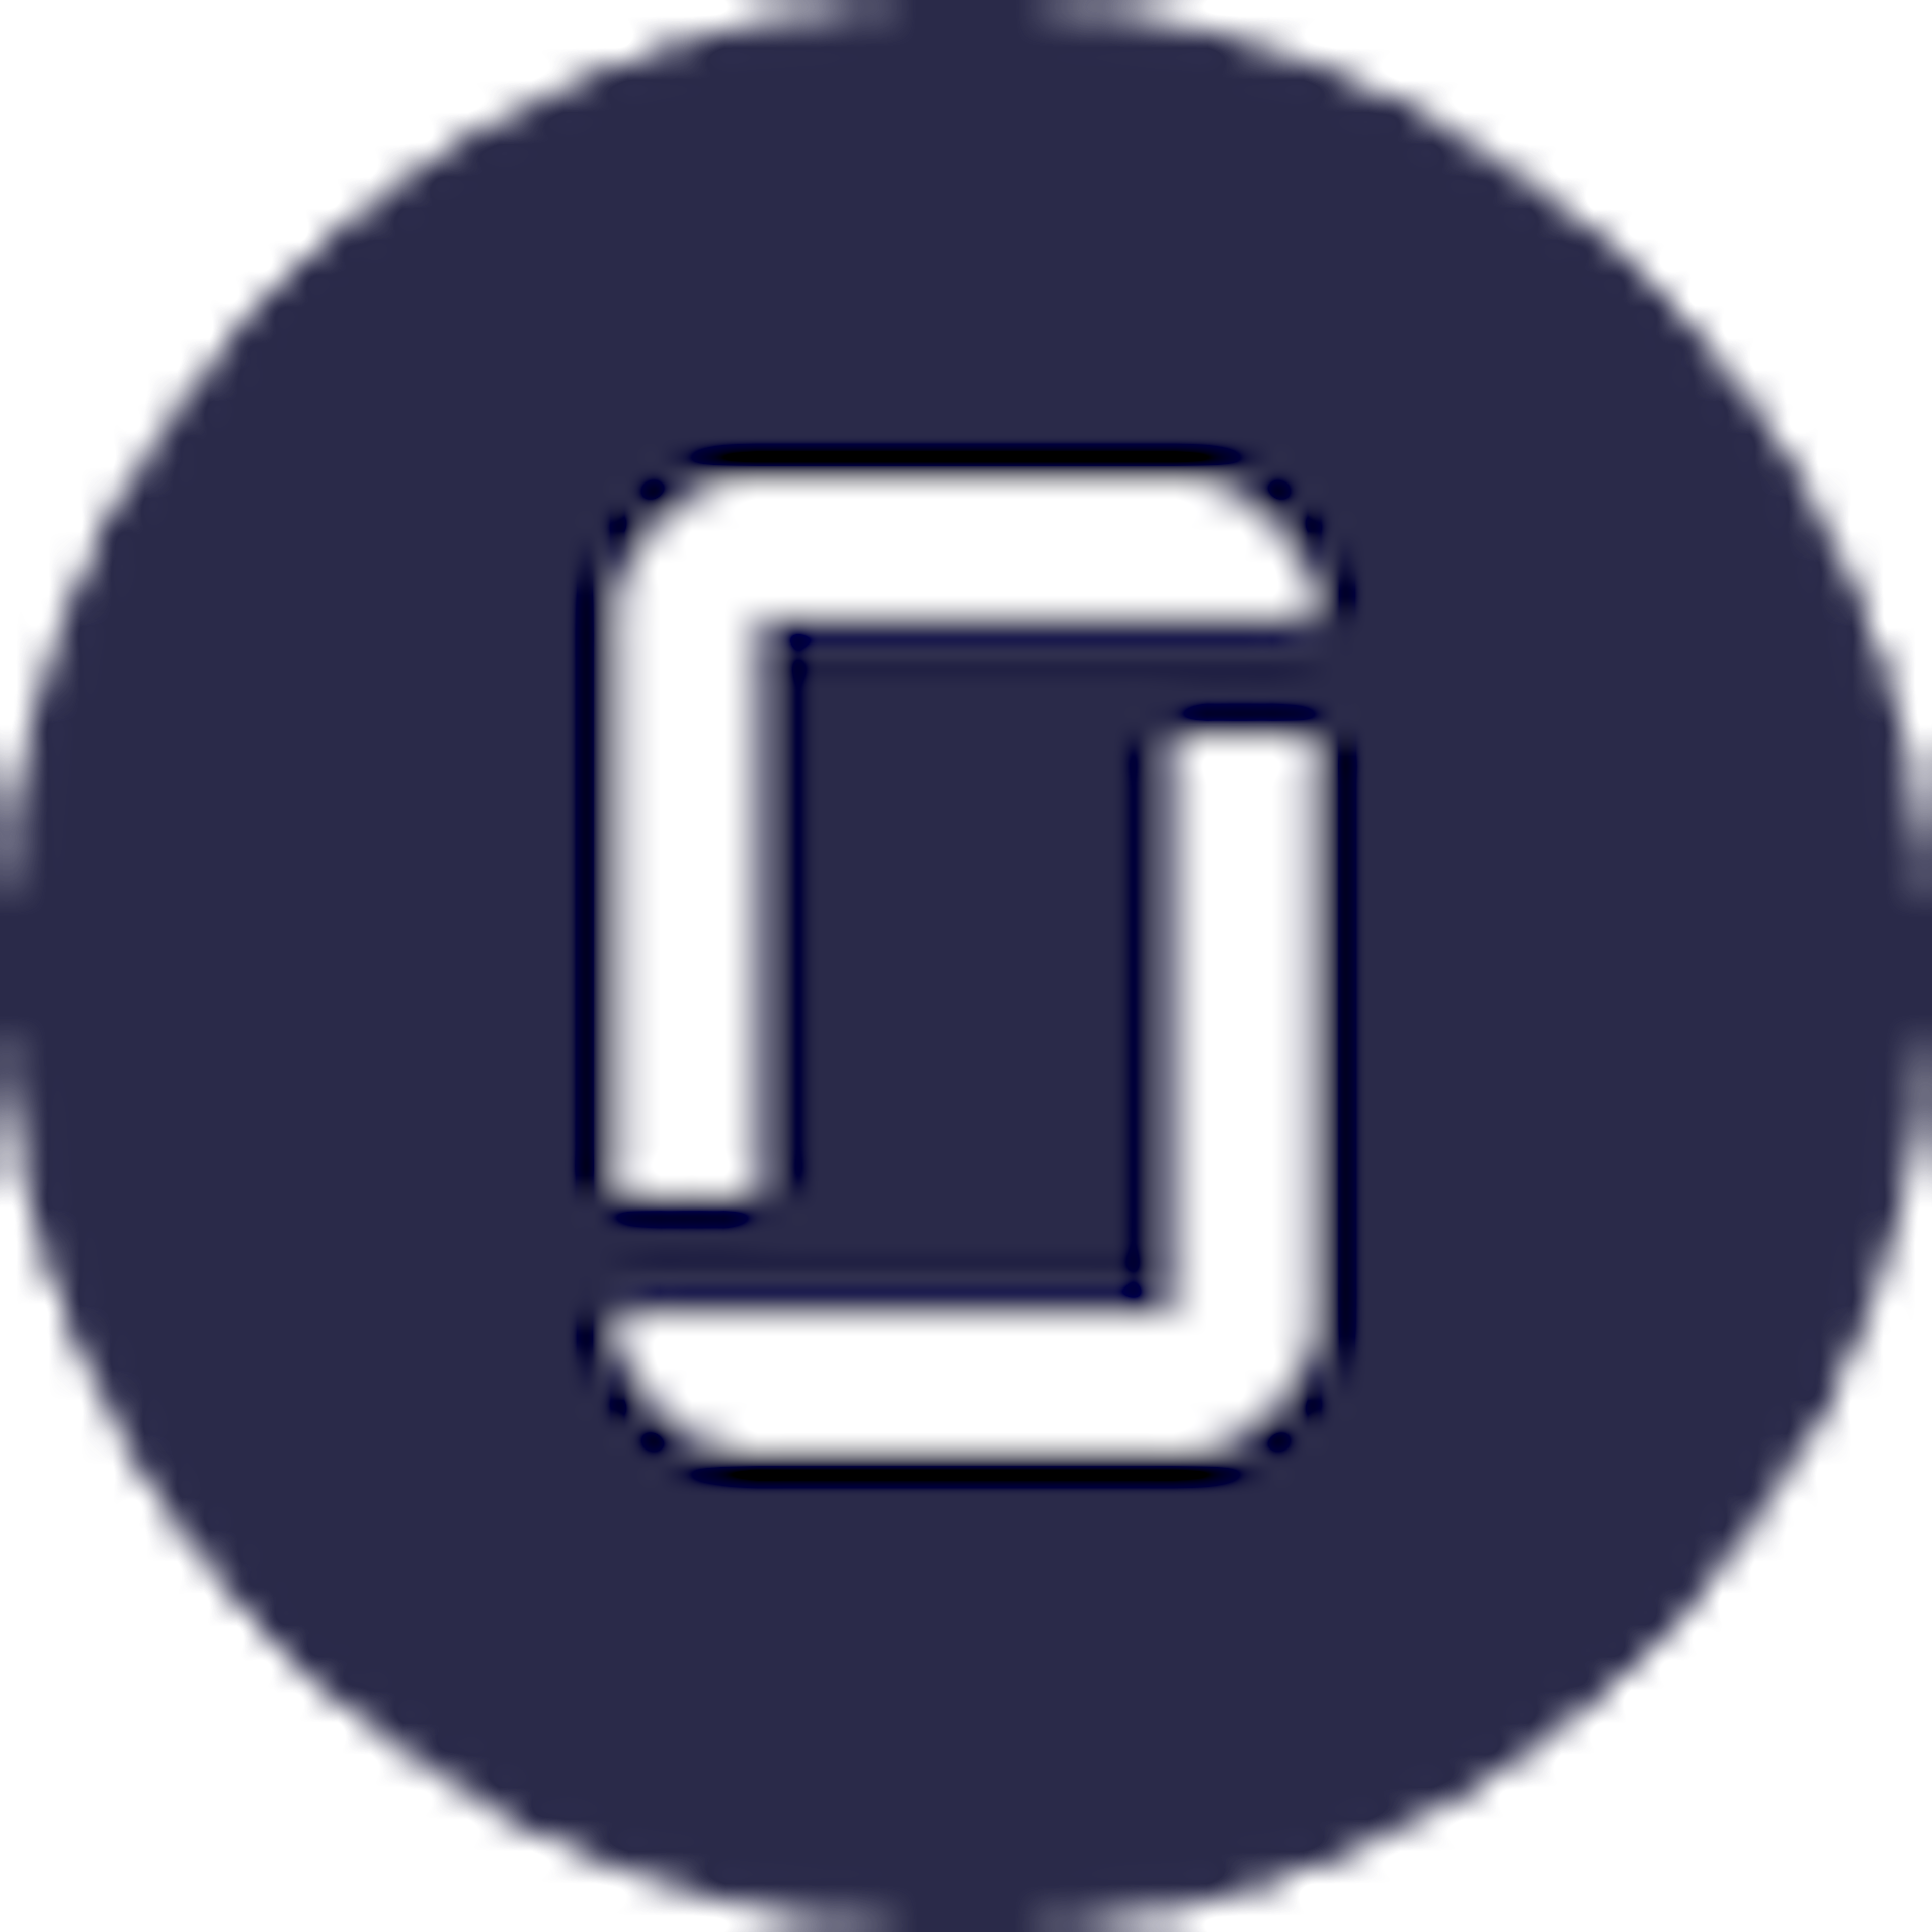 Glassdoor’s logo.